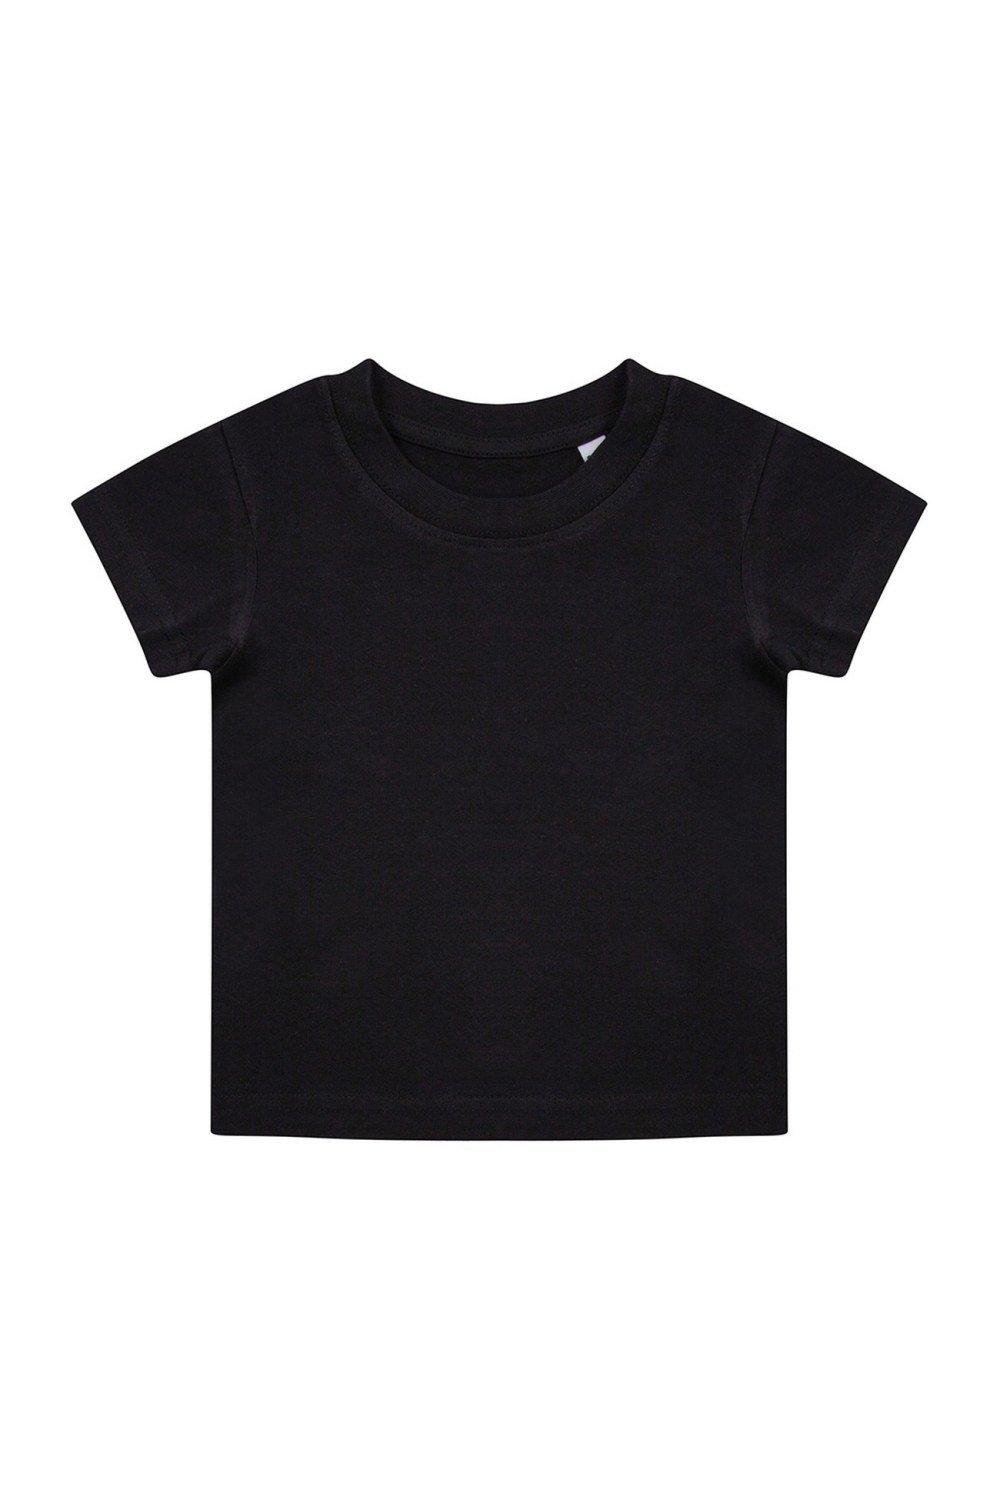 Органическая футболка Larkwood, черный костюм размер 12 18 мес